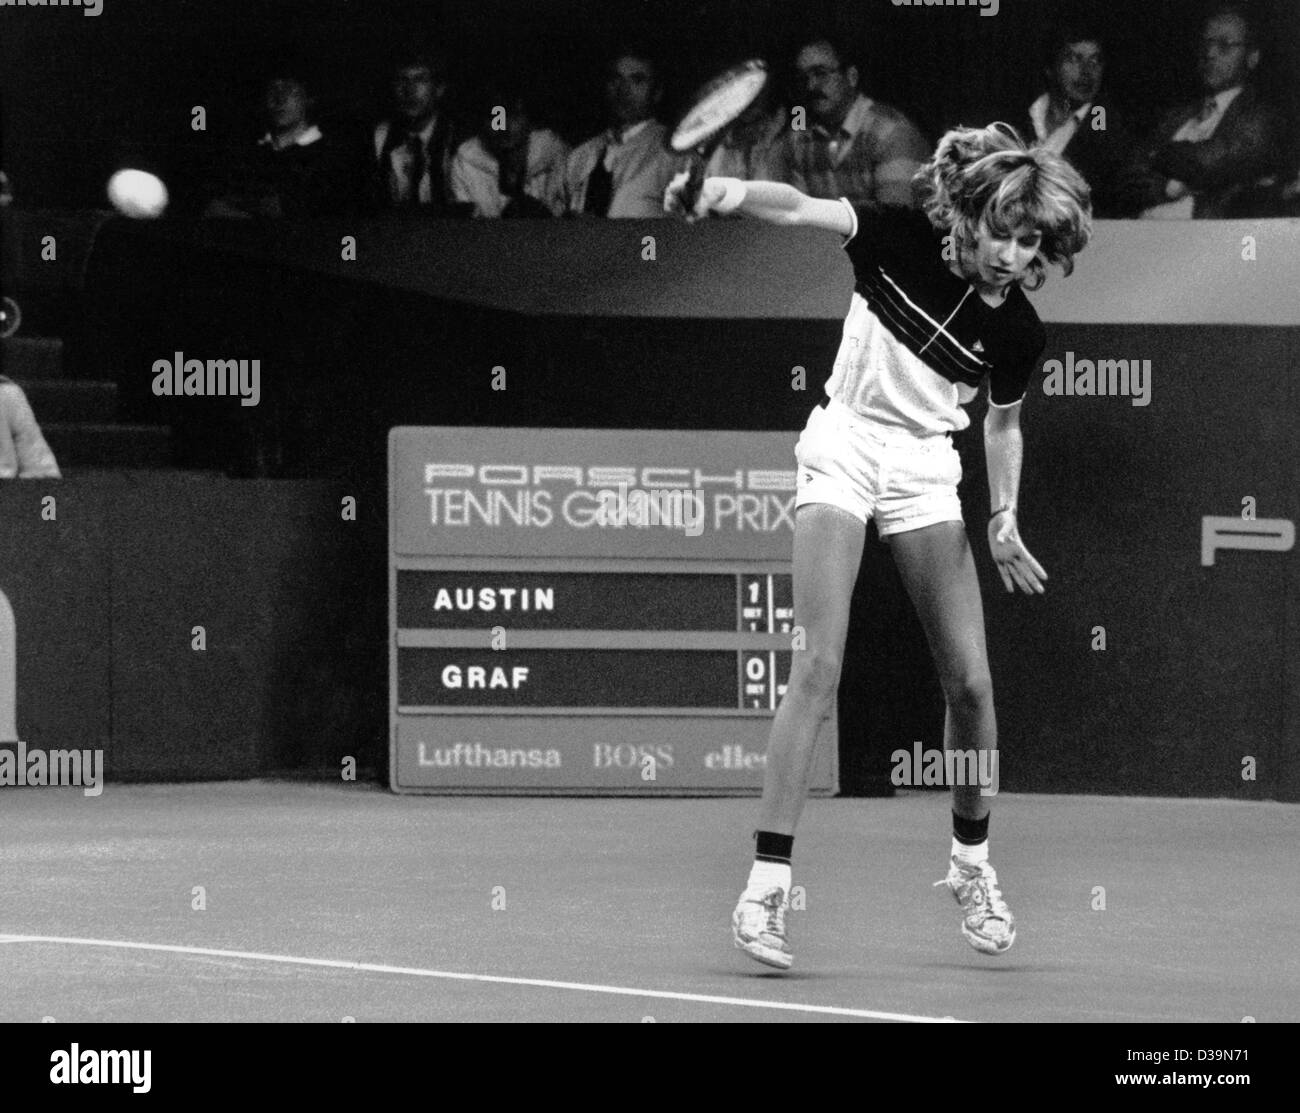 (Dpa) - 13-anno-vecchio Steffi Graf in azione durante una partita a tennis contro American Tracy Austin a Filderstadt vicino a Stoccarda, Germania, 18 ottobre 1982. Alcuni anni più tardi l'adolescente stella del tennis è diventato il mondo il numero 1 femmina giocatore di tennis. Foto Stock